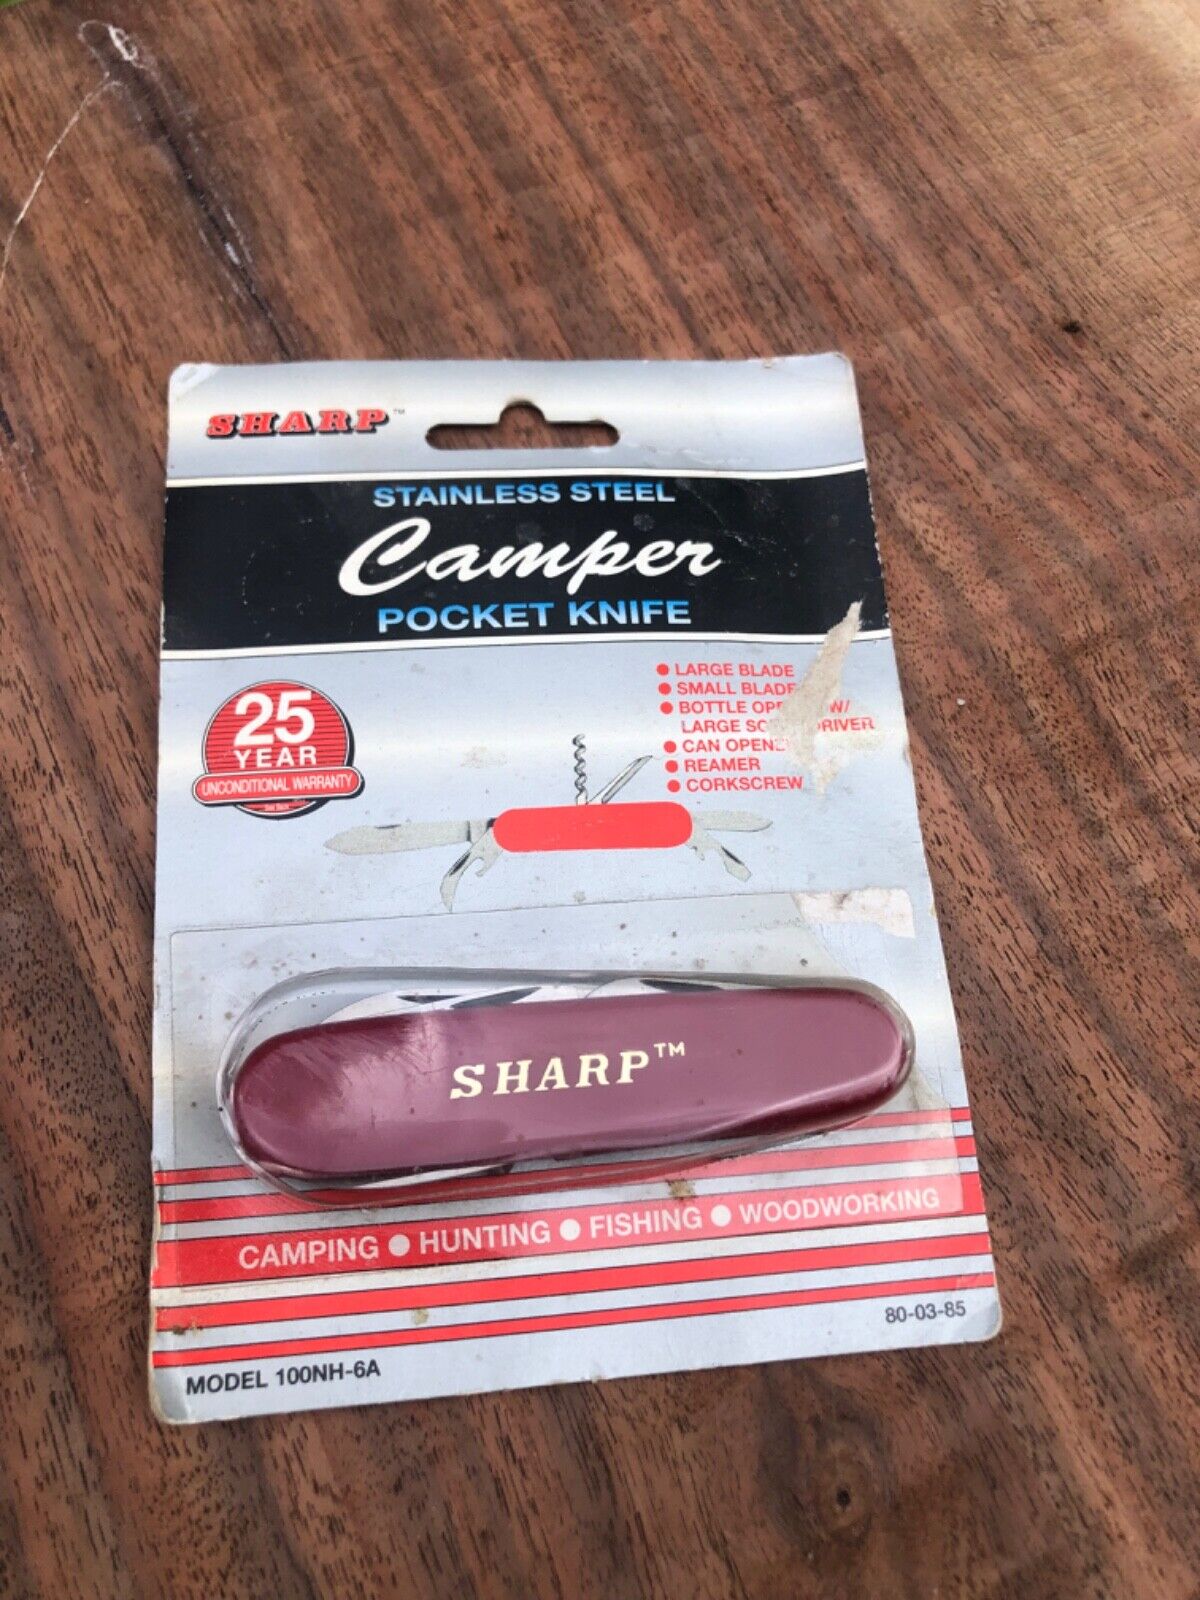 Vintage Sharp brand camping knife sold in Kmart